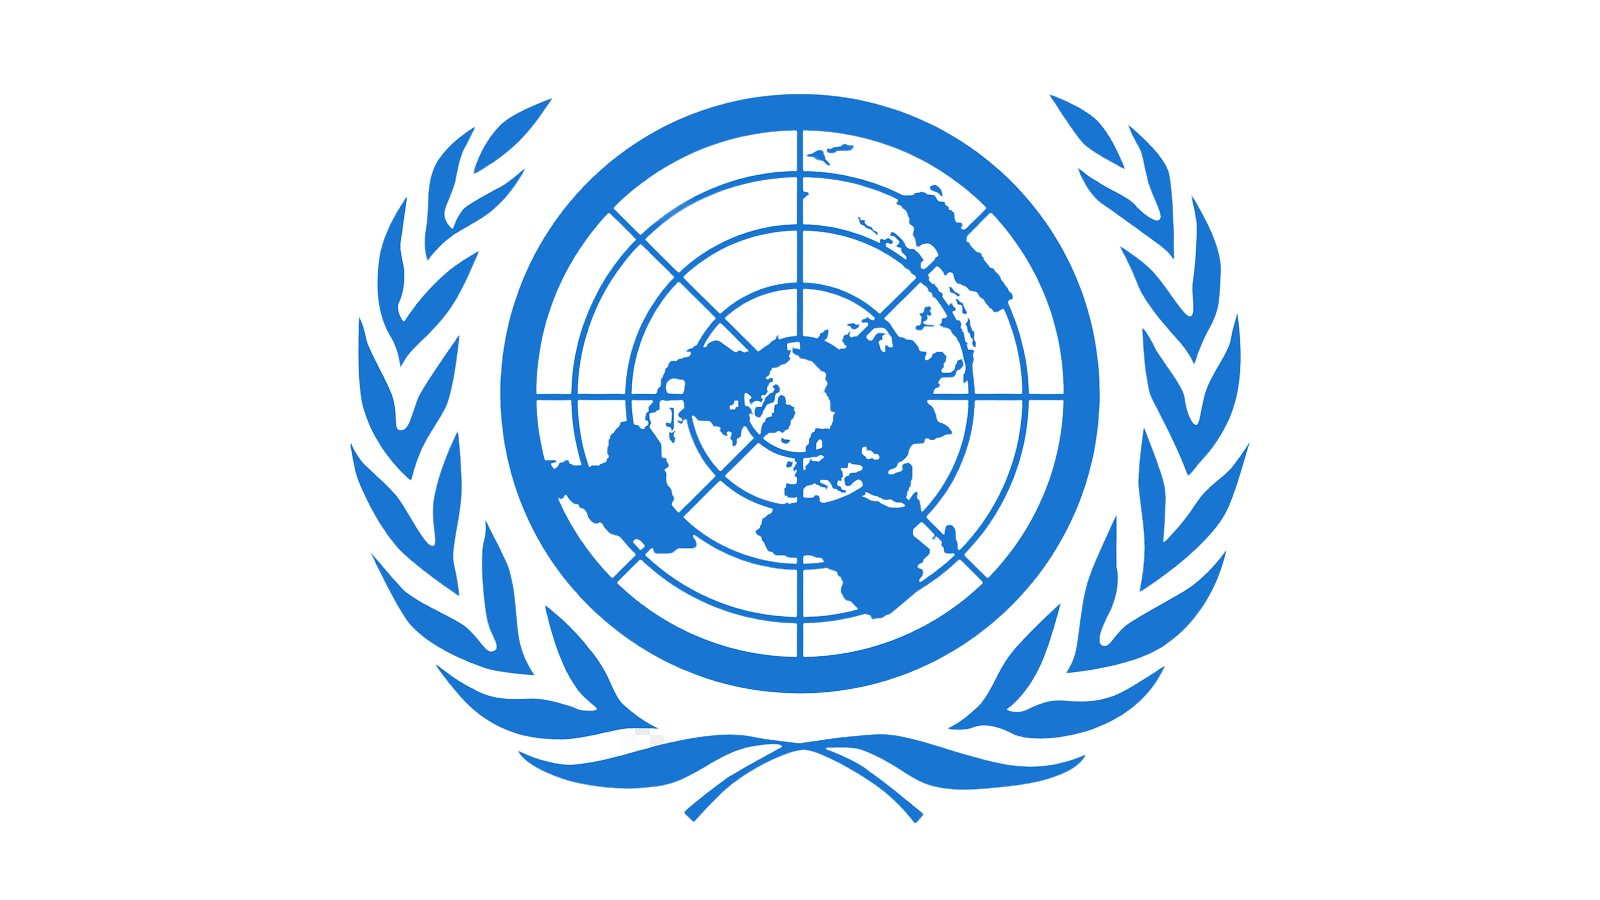 Центр оон. Всемирная метеорологическая организация (ВМО). Международные организации ООН. Организация Объединенных наций (ООН). Символ ООН.